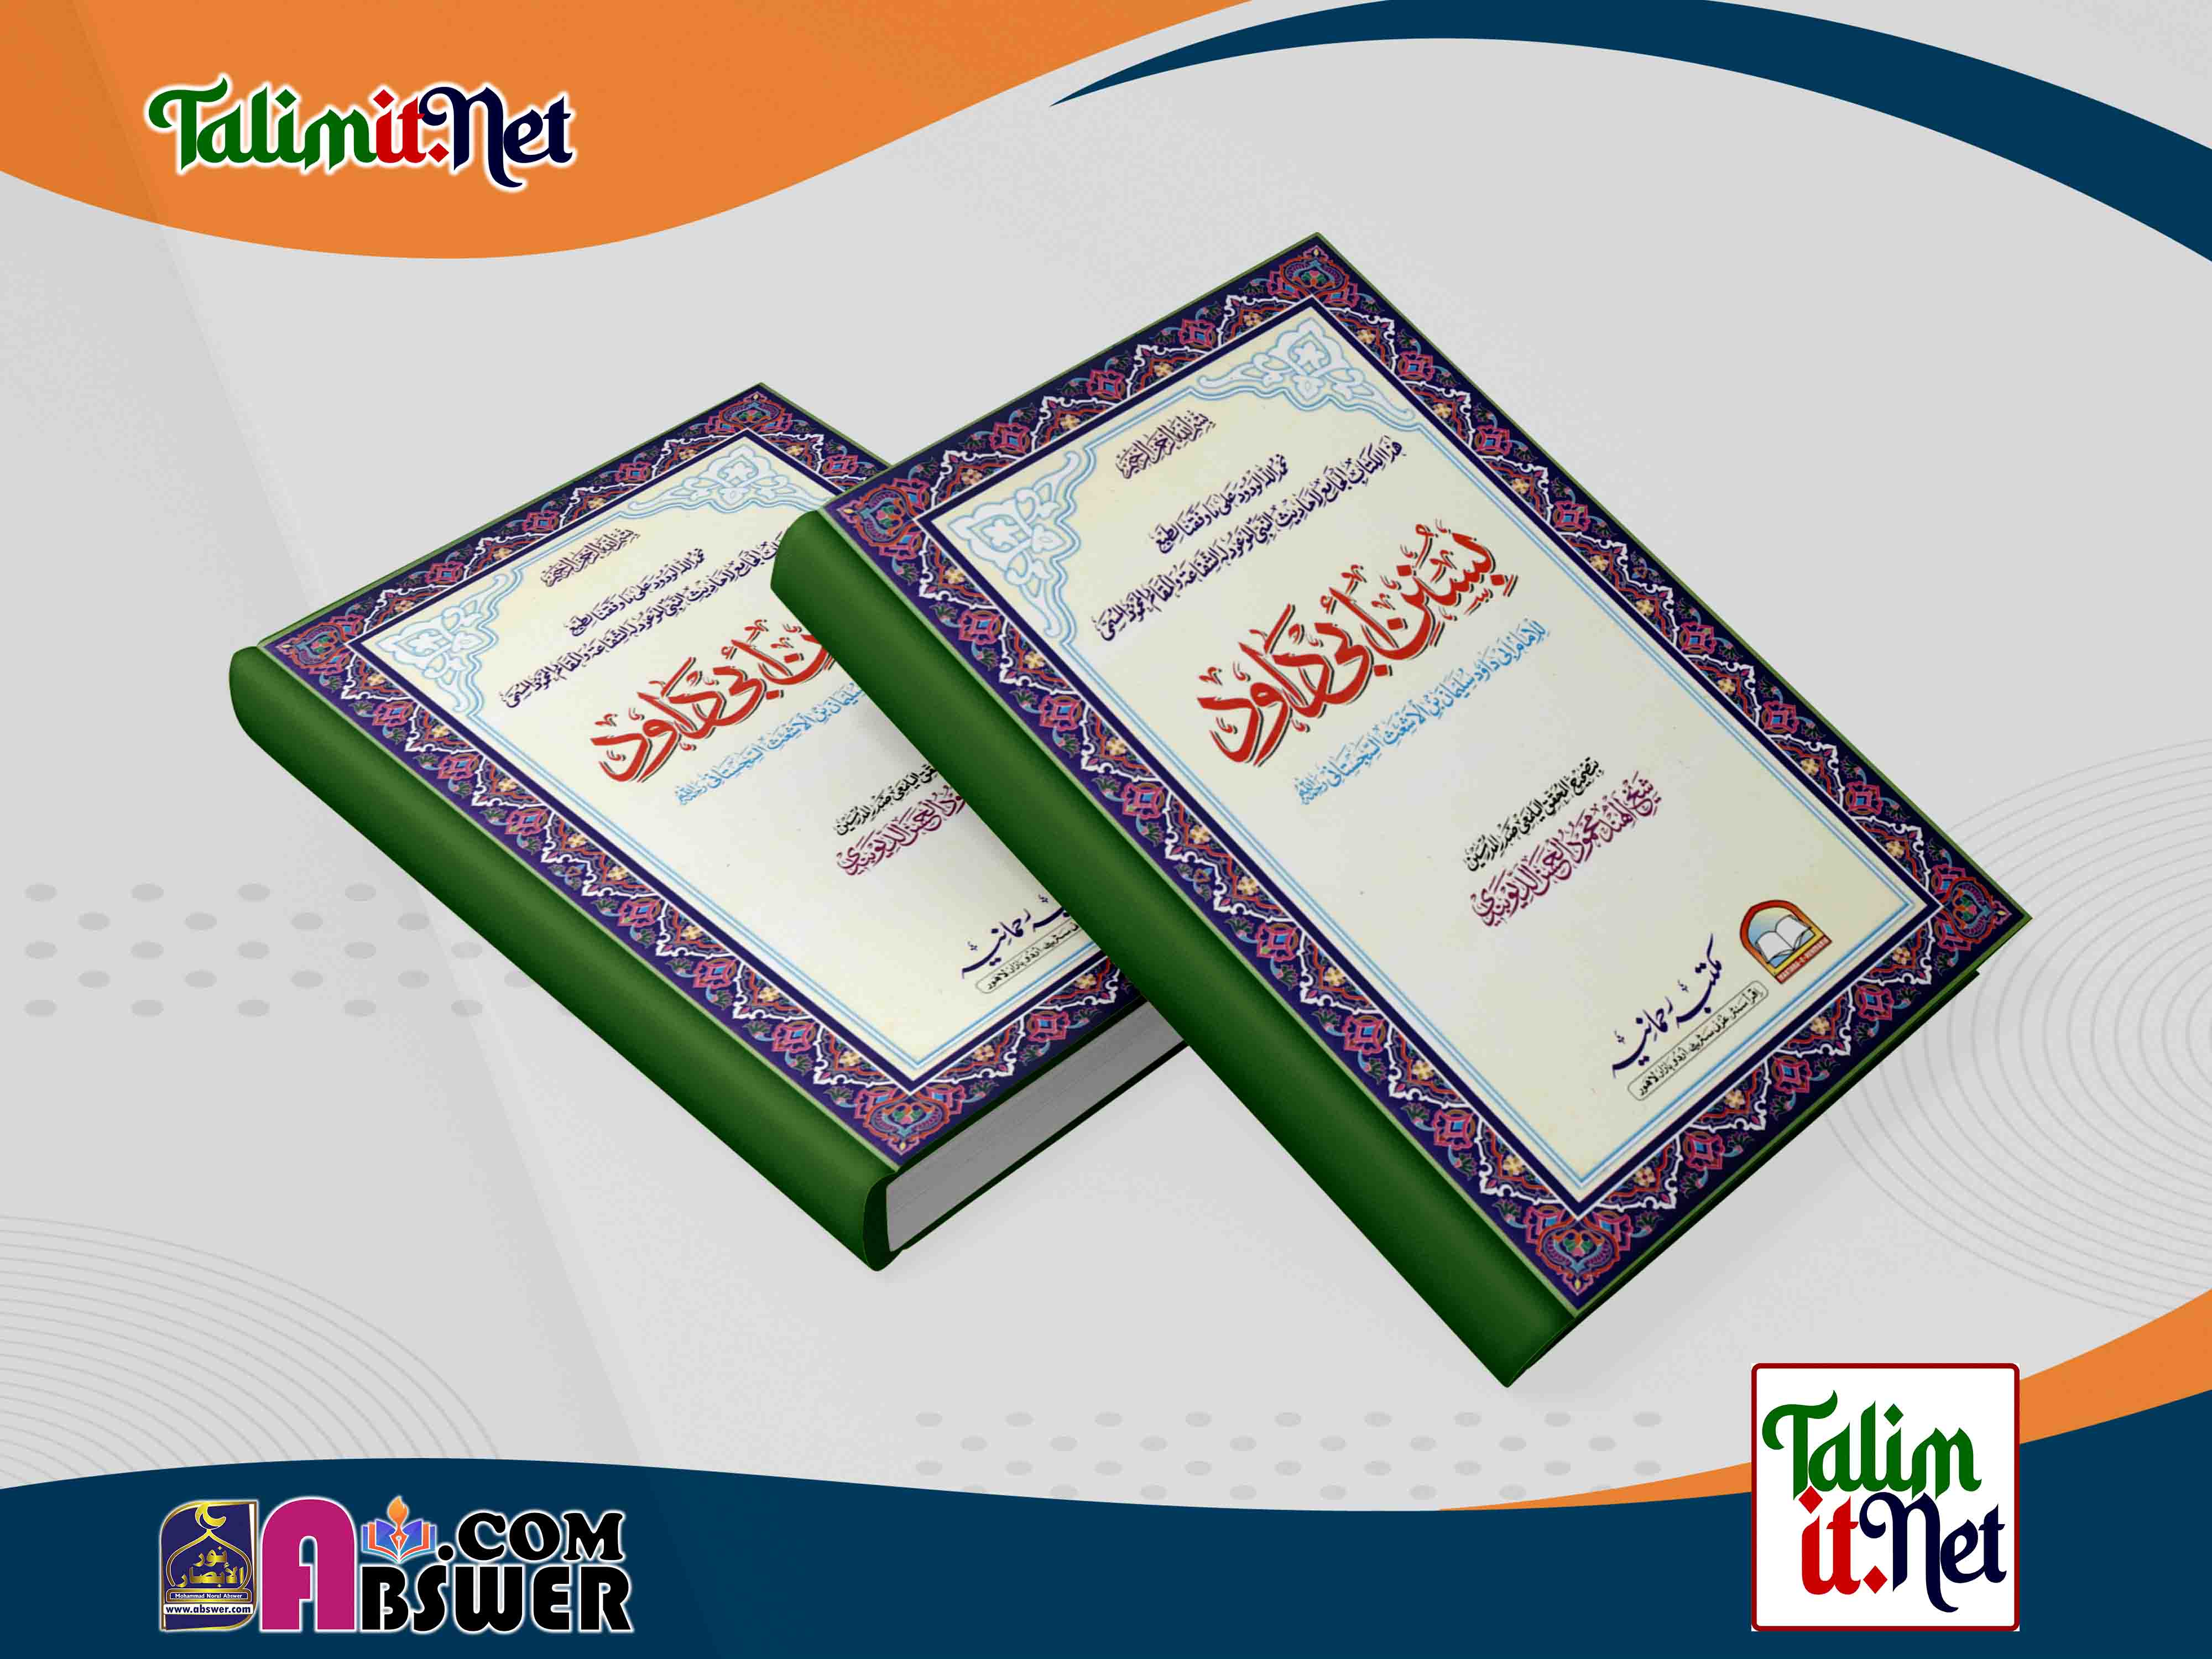 সুনানু আবি দাউদ - ২য় খন্ড | কামিল হাদীস বিভাগের মূল কিতাব পিডিএফ | Sunan Abu Dawood 2nd Part - Kamil Hadith Dept Book Pdf